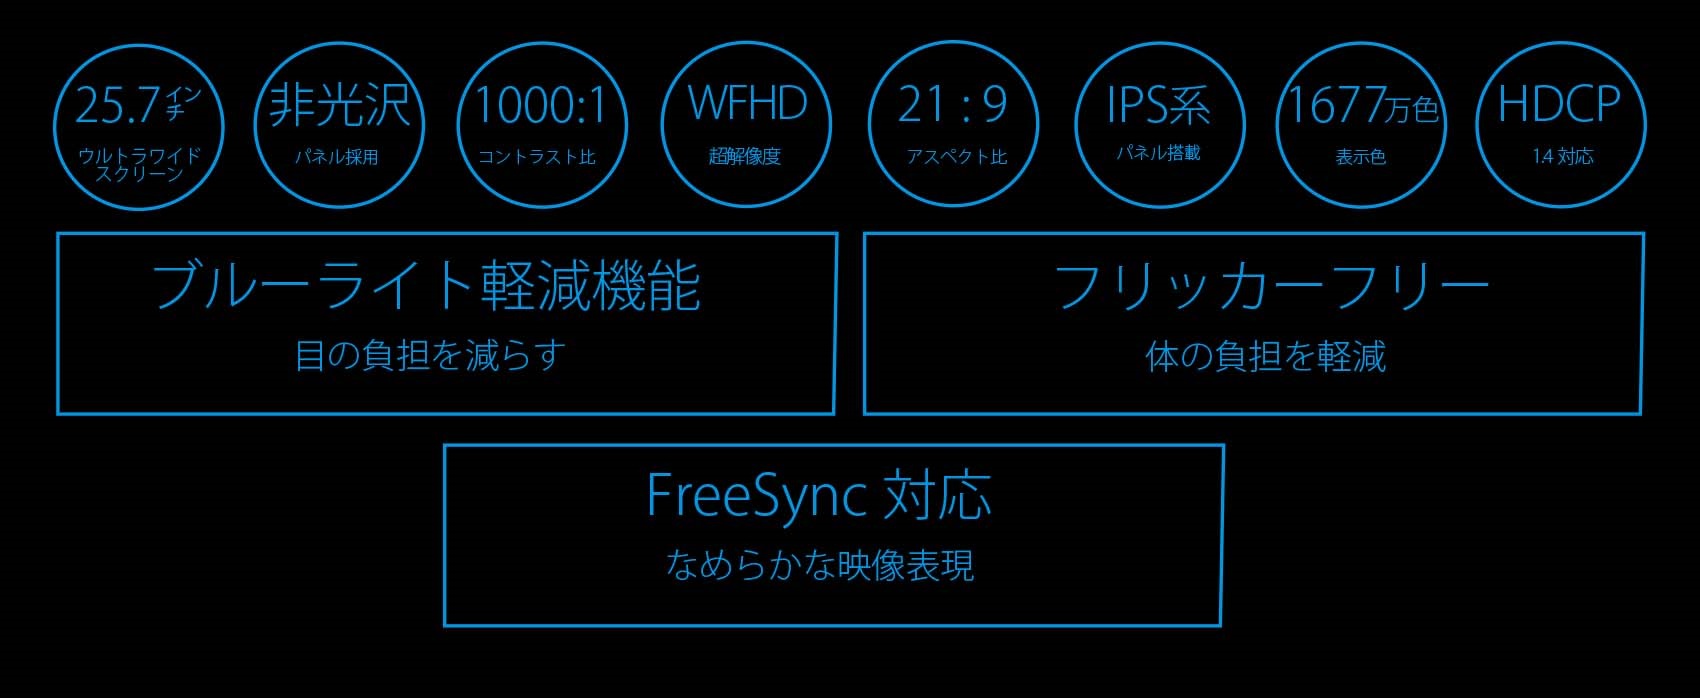 JAPANNEXT 「JN-IPS257WFHD」25.7インチ WFHD IPS系液晶モニター HDMI DP ワイドFHD(2560 x 1080)  – JAPANNEXT 4K WQHDなど超解像度、ゲーミング、曲面など特殊液晶モニター